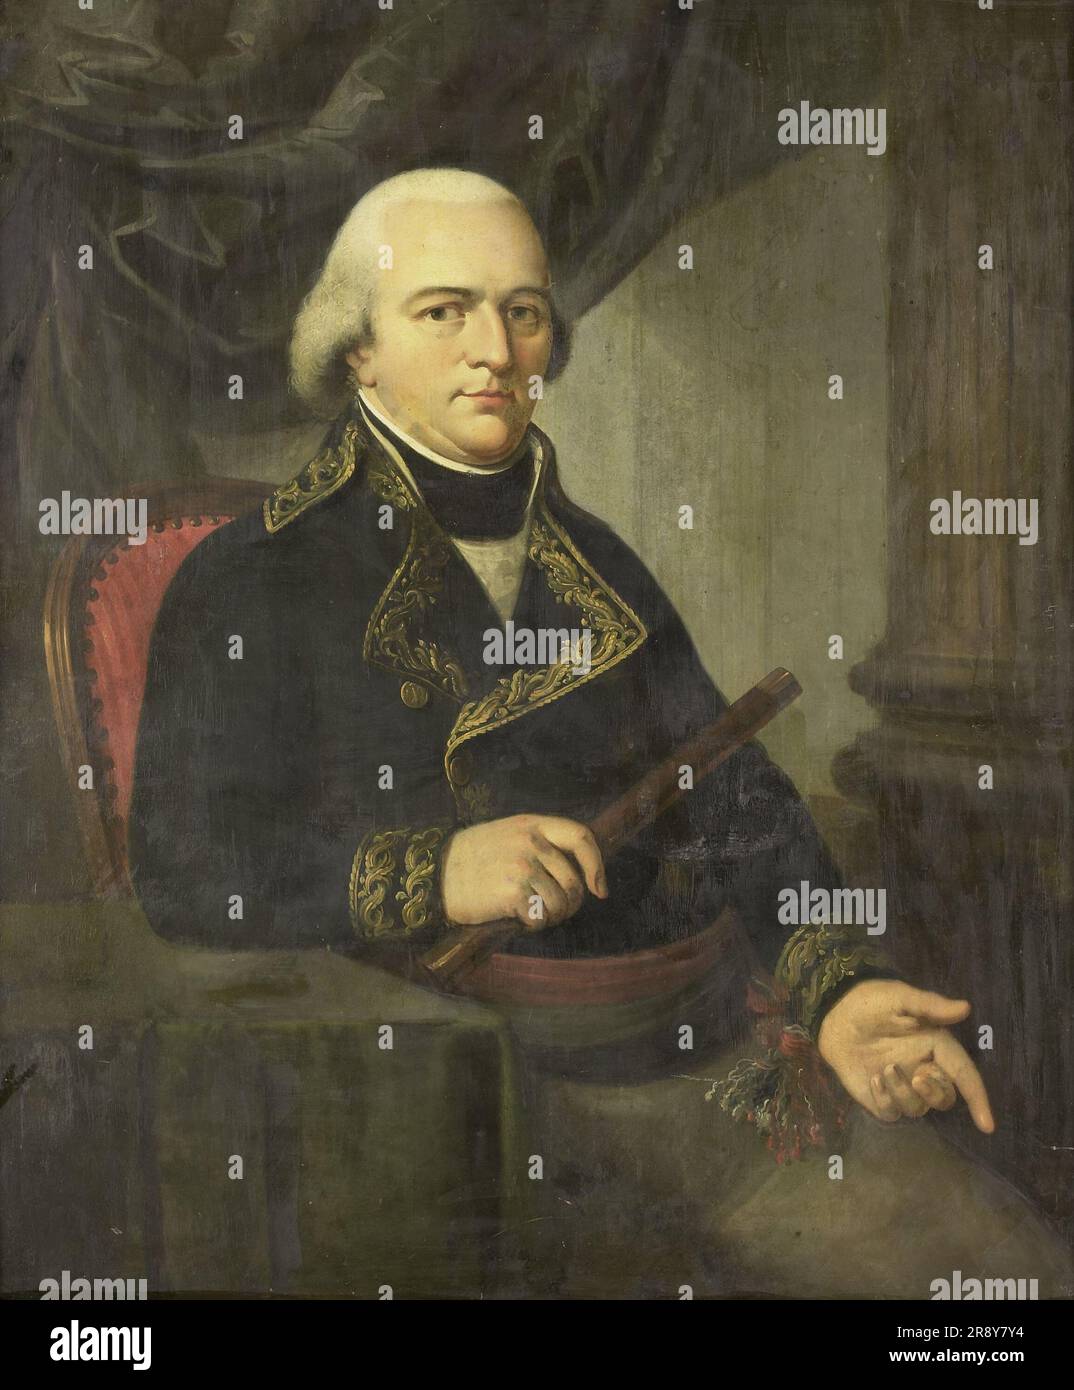 Portrait de Pieter Gerardus van Overstraten, gouverneur général des Indes néerlandaises, 1802-1820. Attribué à Adriaan de Lelie. Banque D'Images